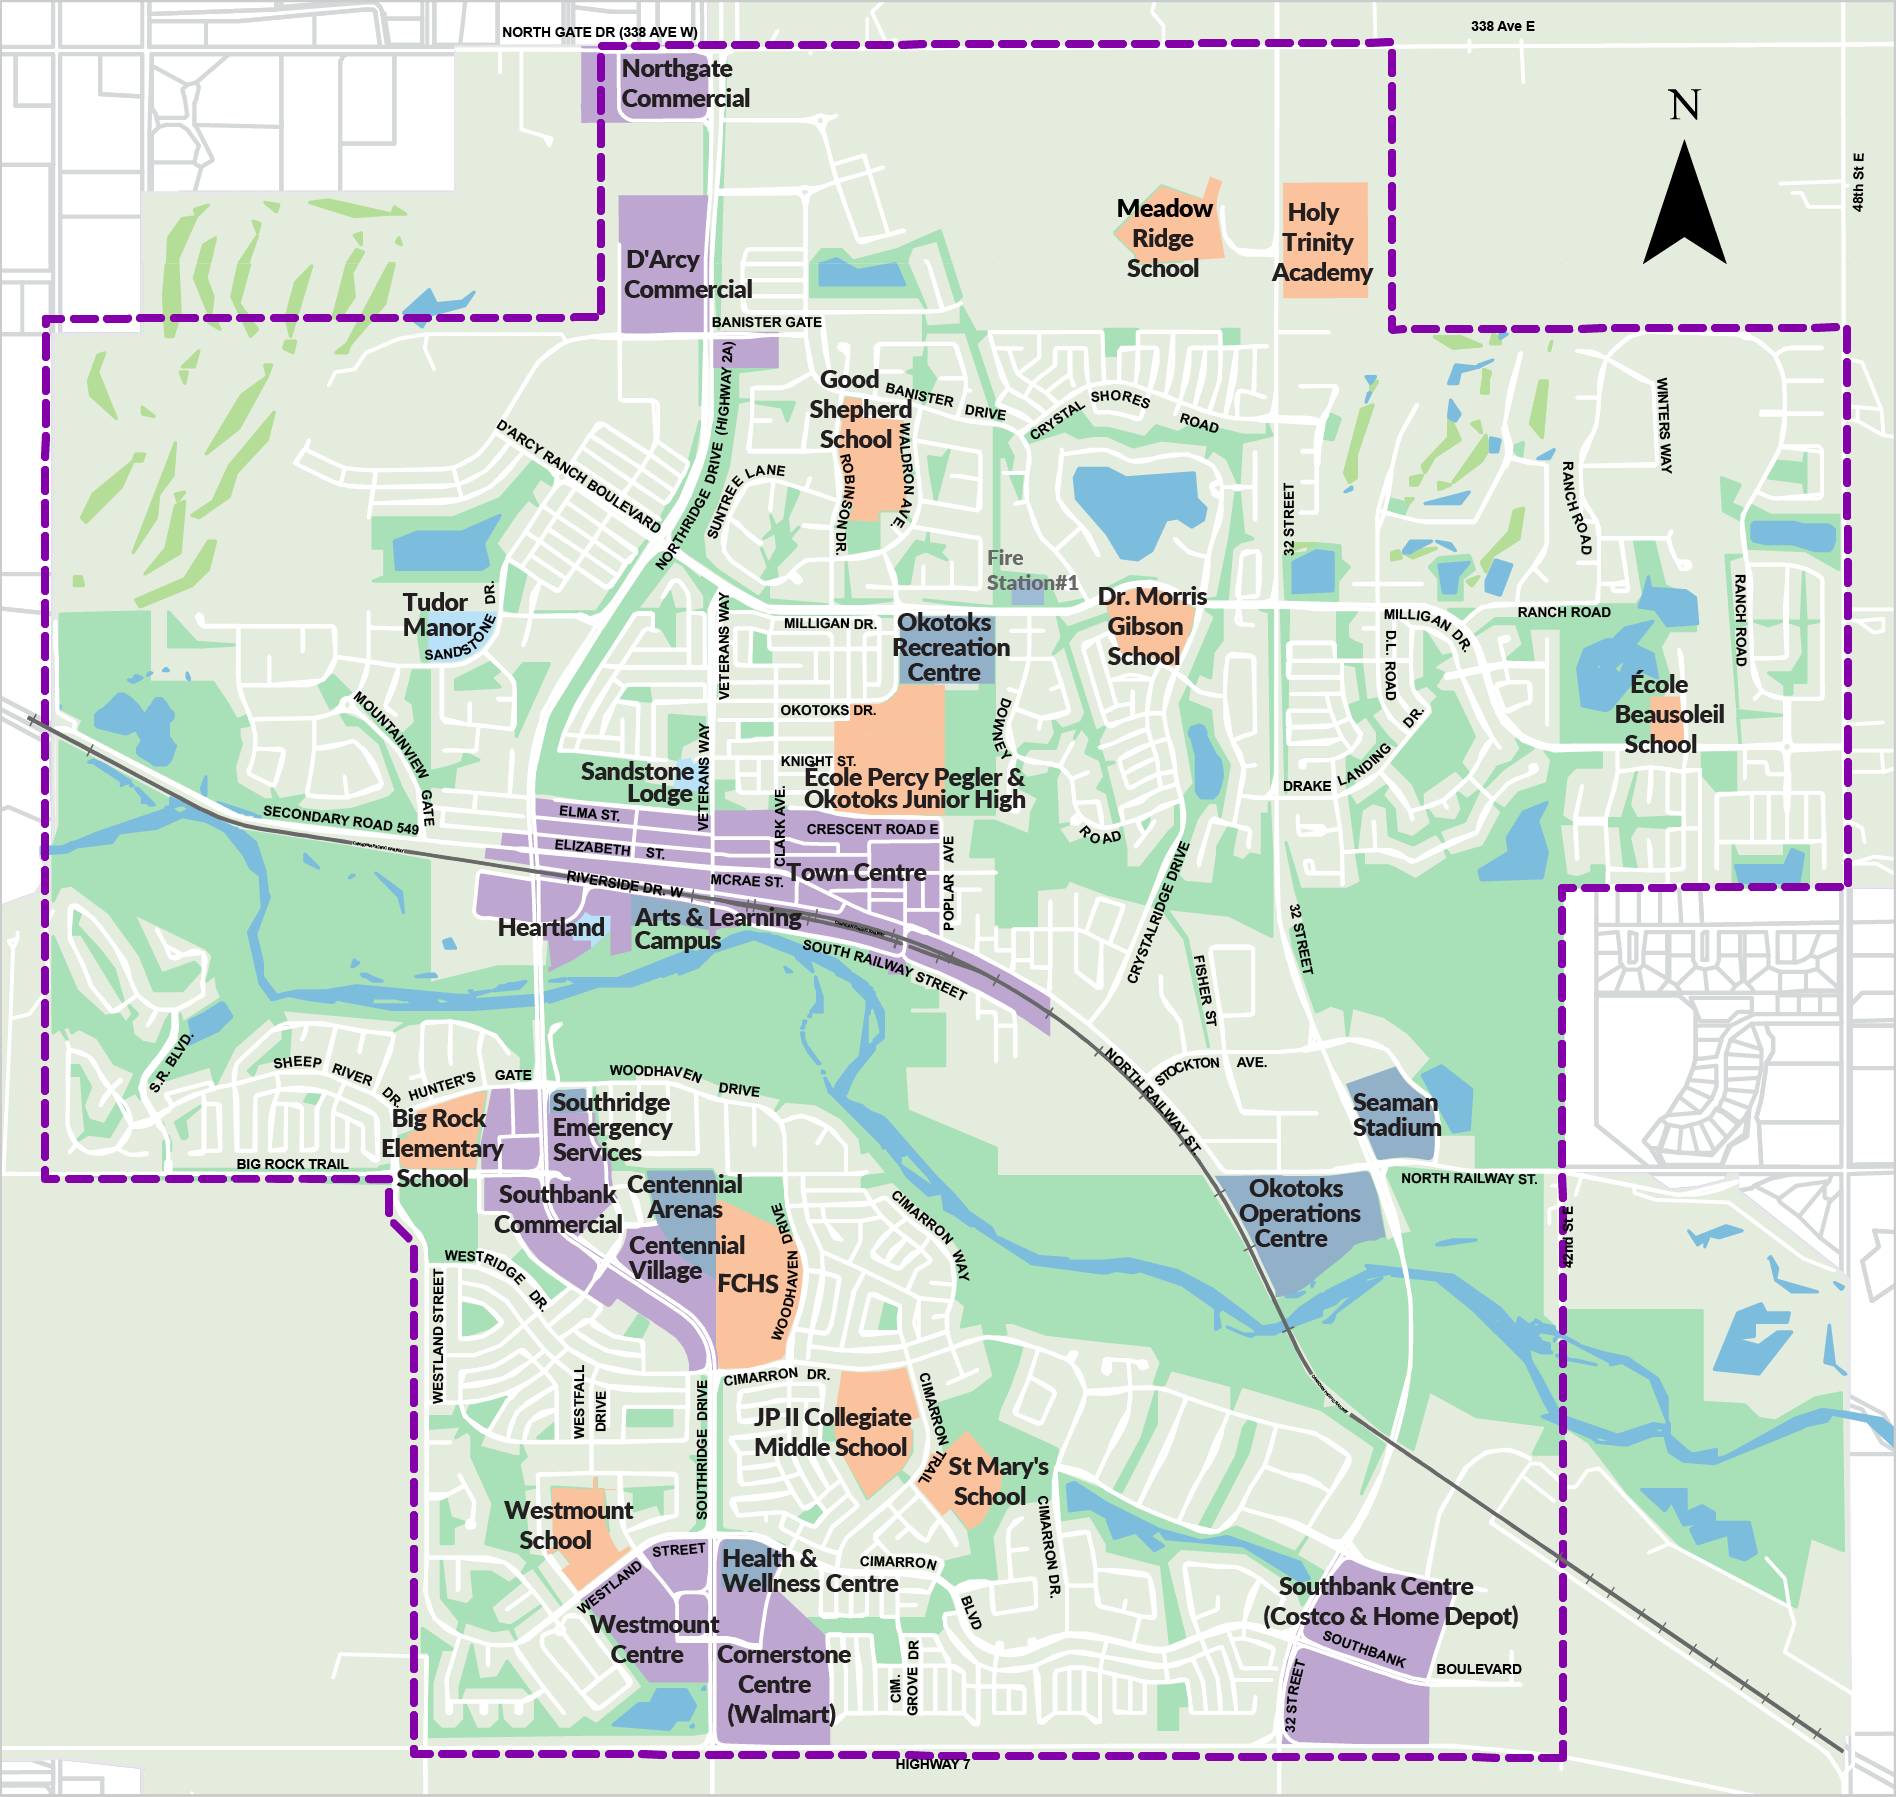 Transit Service Area map